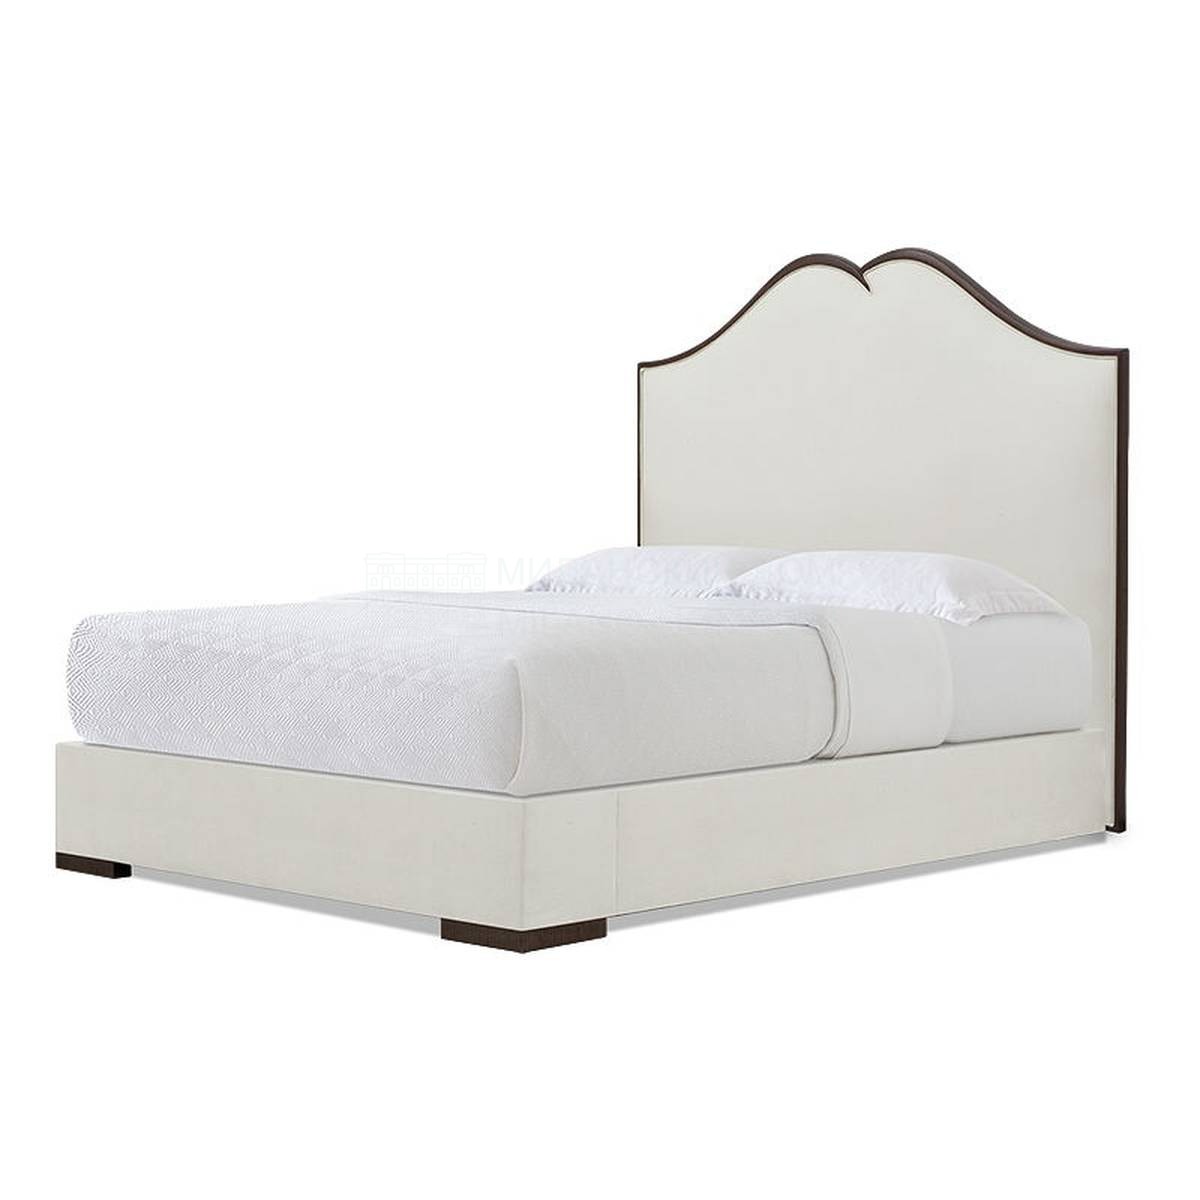 Кровать с мягким изголовьем Saskia bed из США фабрики CHRISTOPHER GUY